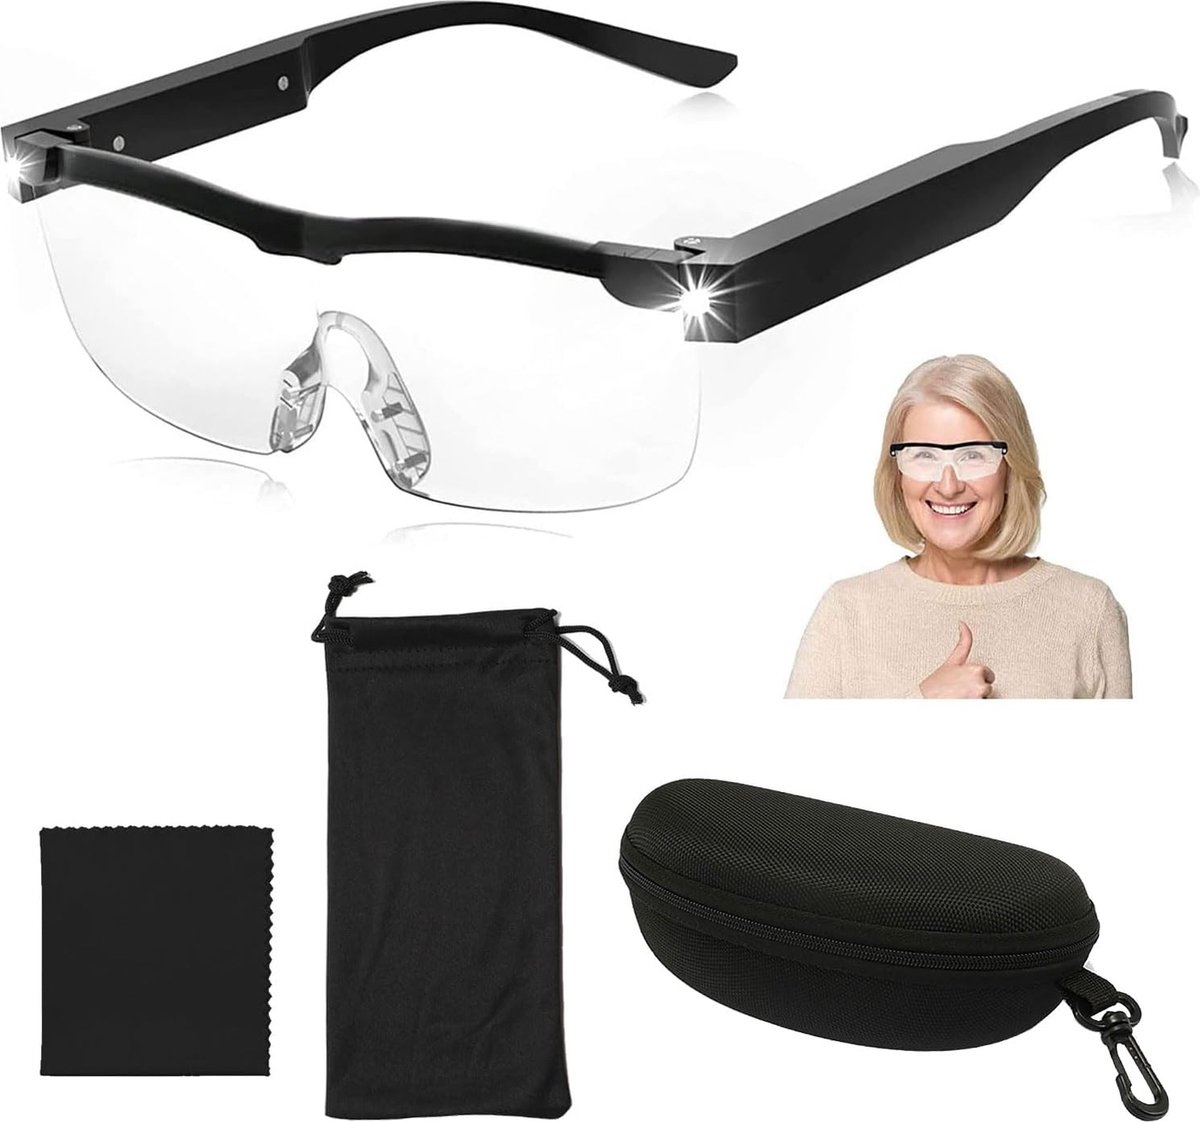 Hoofd Vergrootglas Bril met LED-verlichting - Handenvrije Vergrotingshulp - Loepbril voor Brildragers - Ayangoods